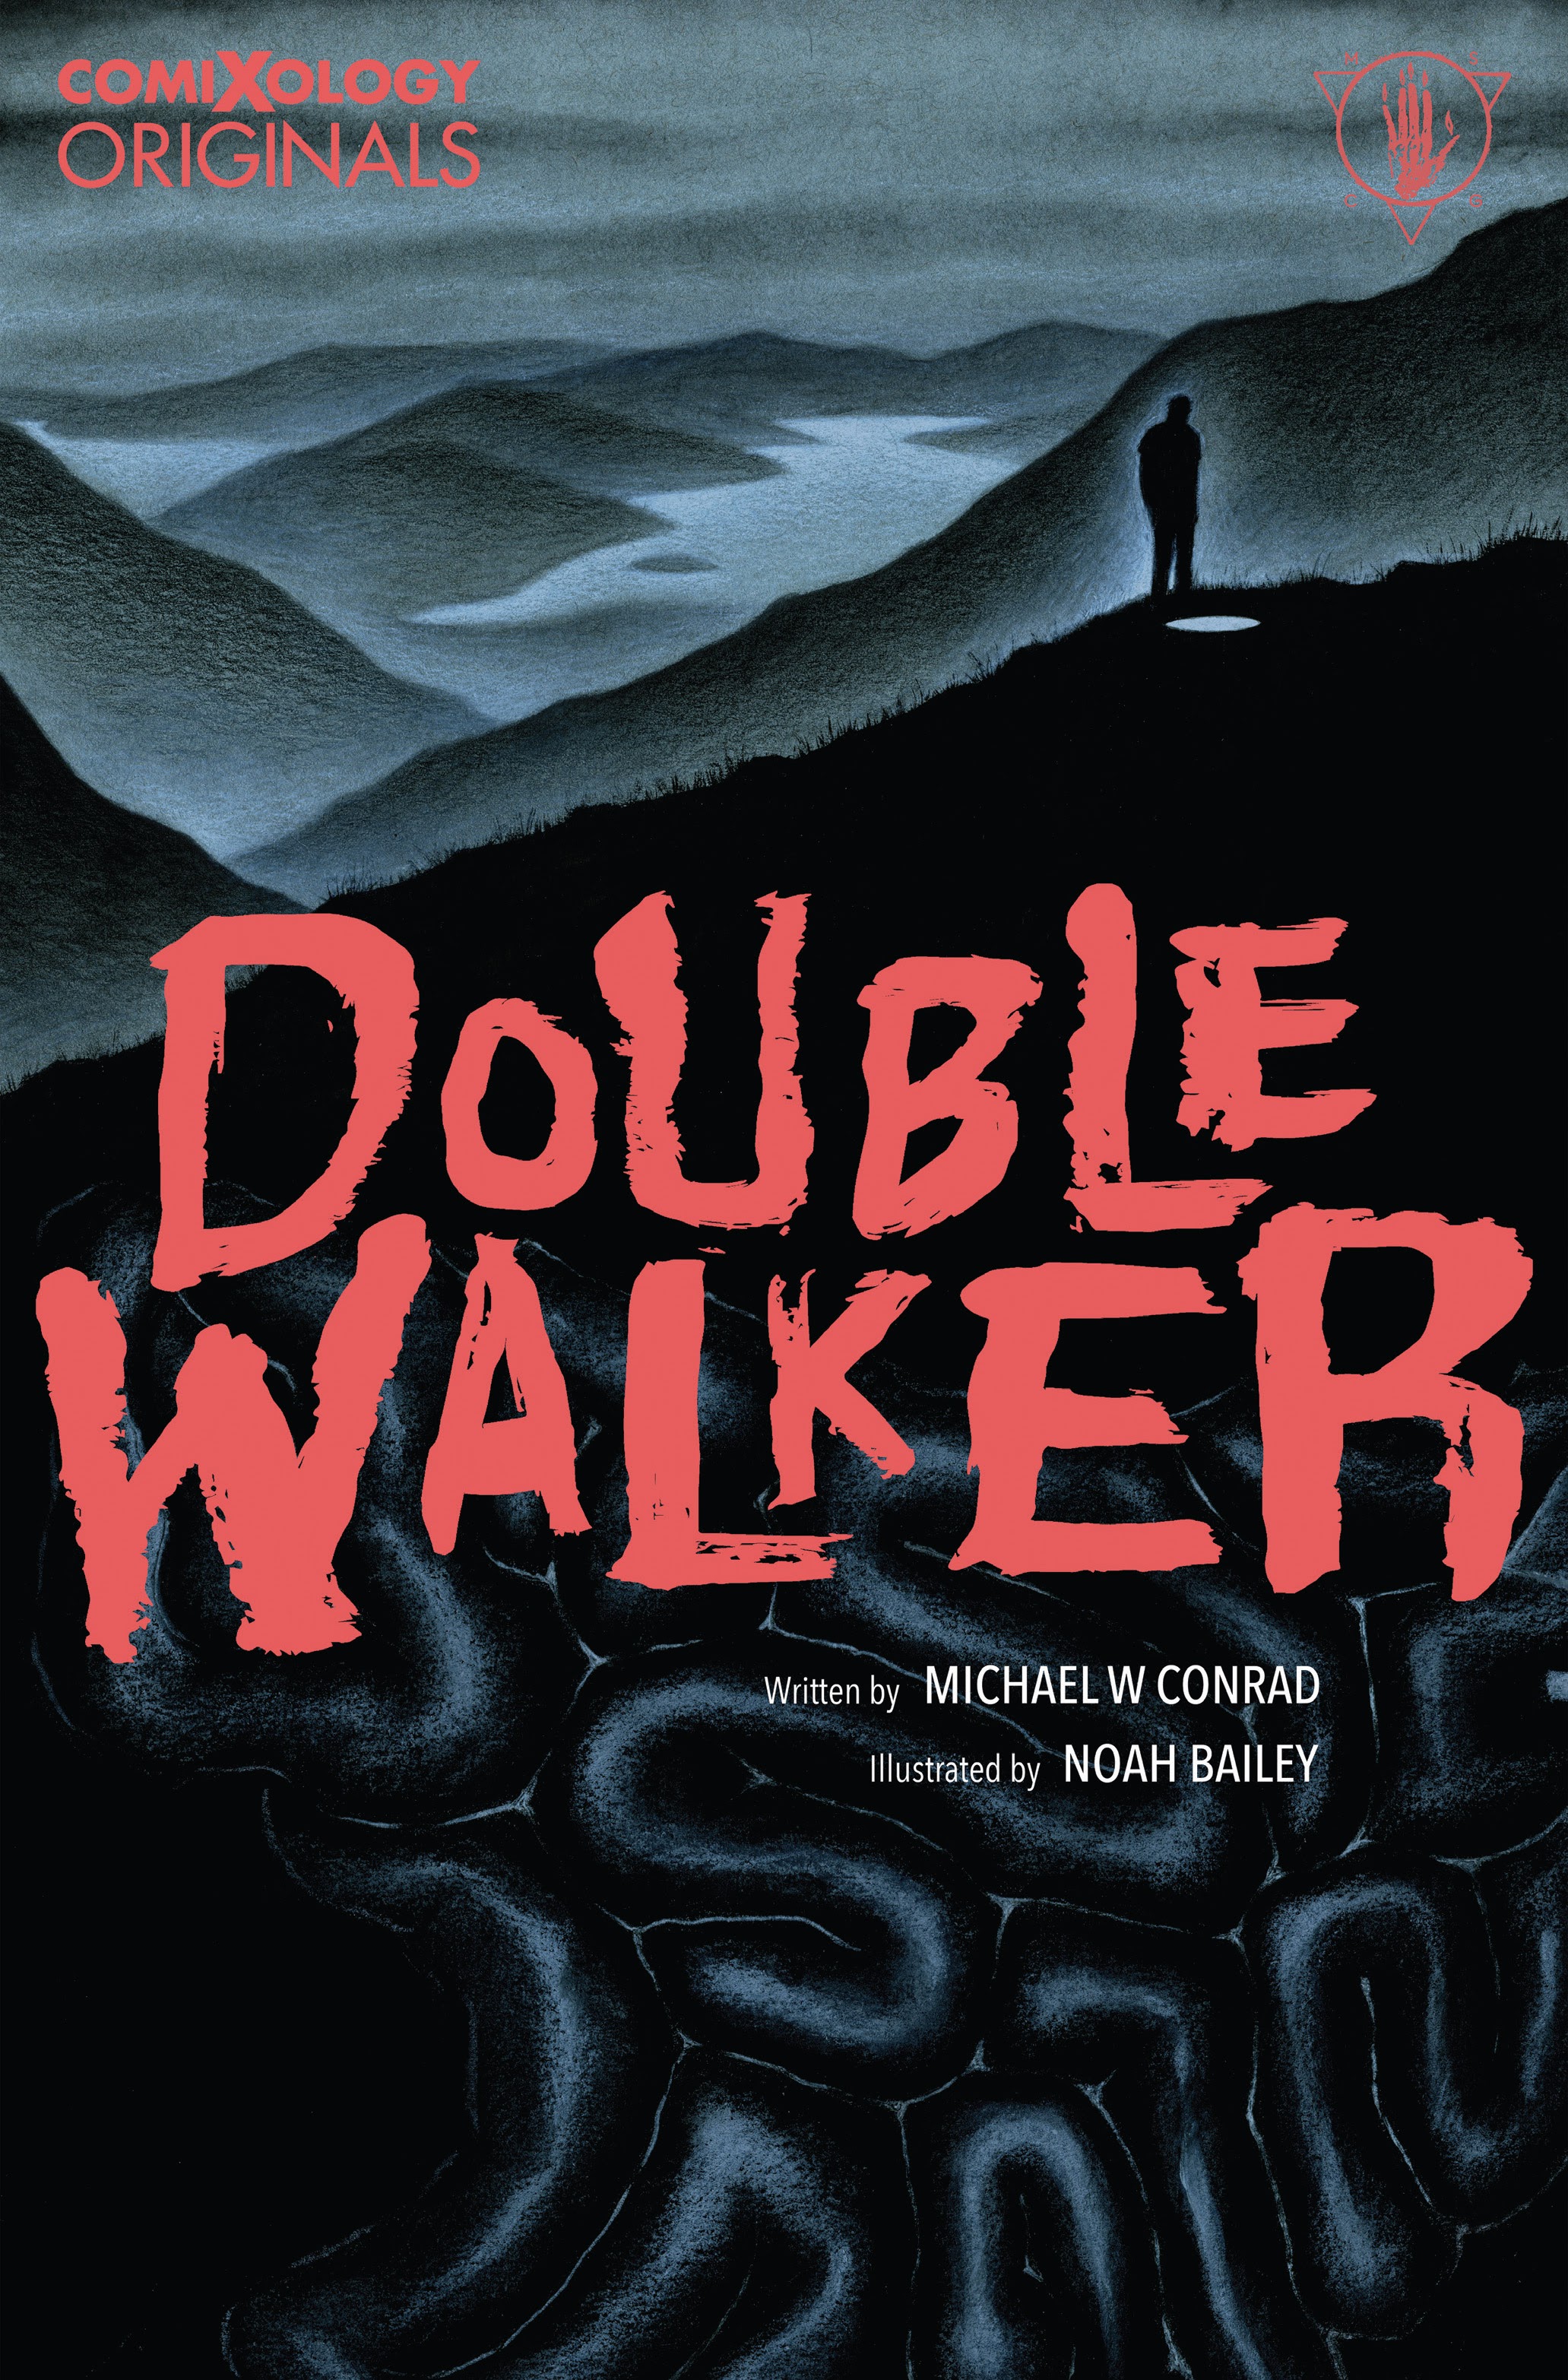 Read online Double Walker comic -  Issue # TPB - 1